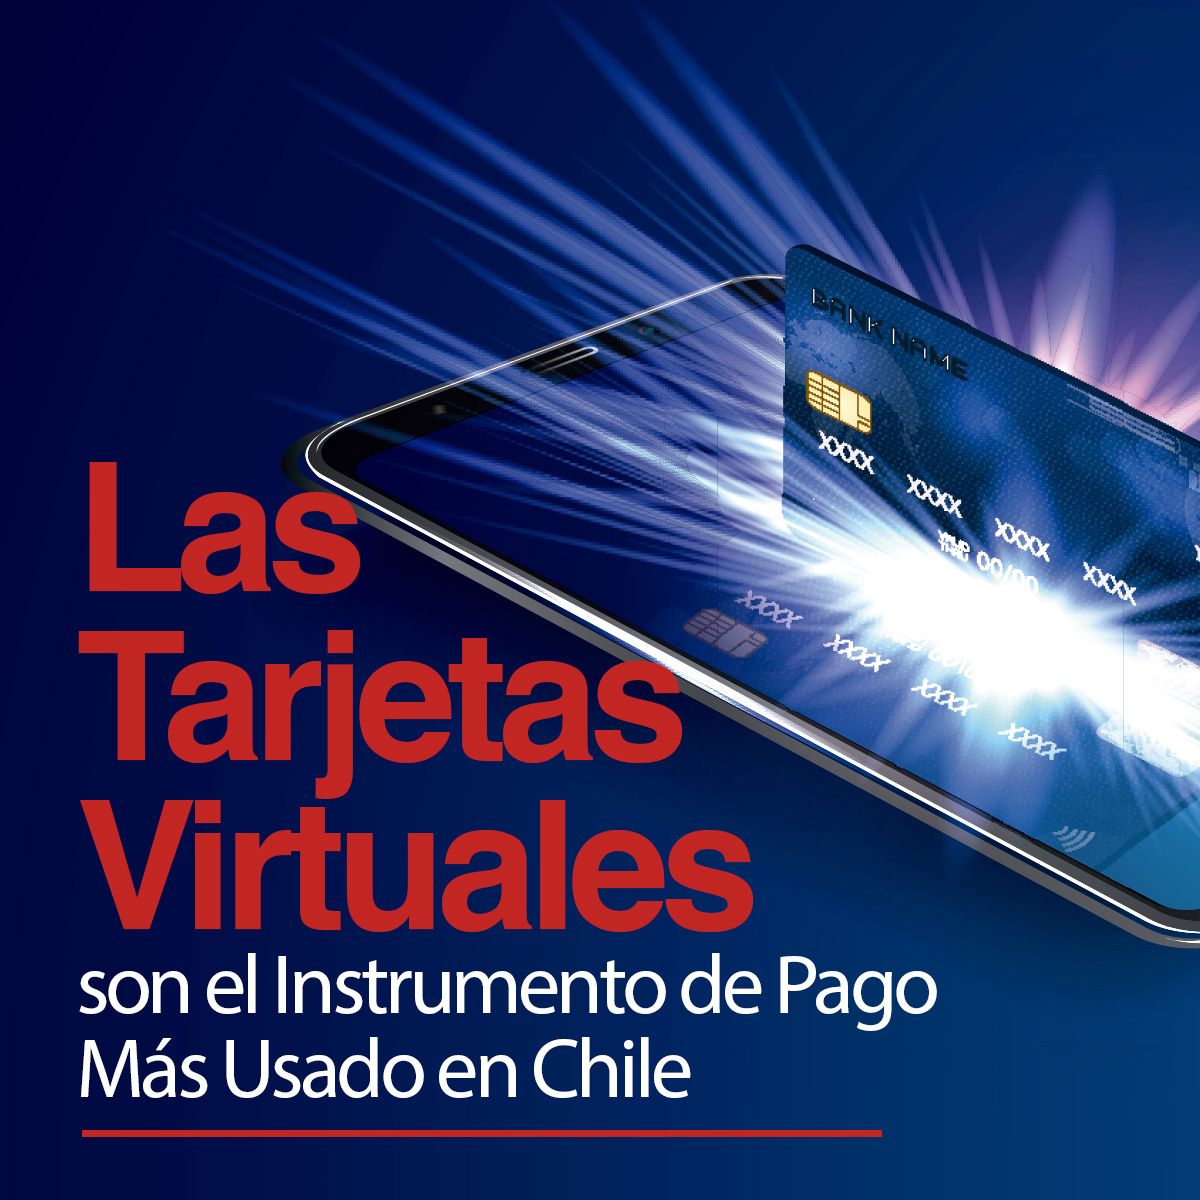 Las Tarjetas Virtuales son el Instrumento de Pago Más Usado en Chile